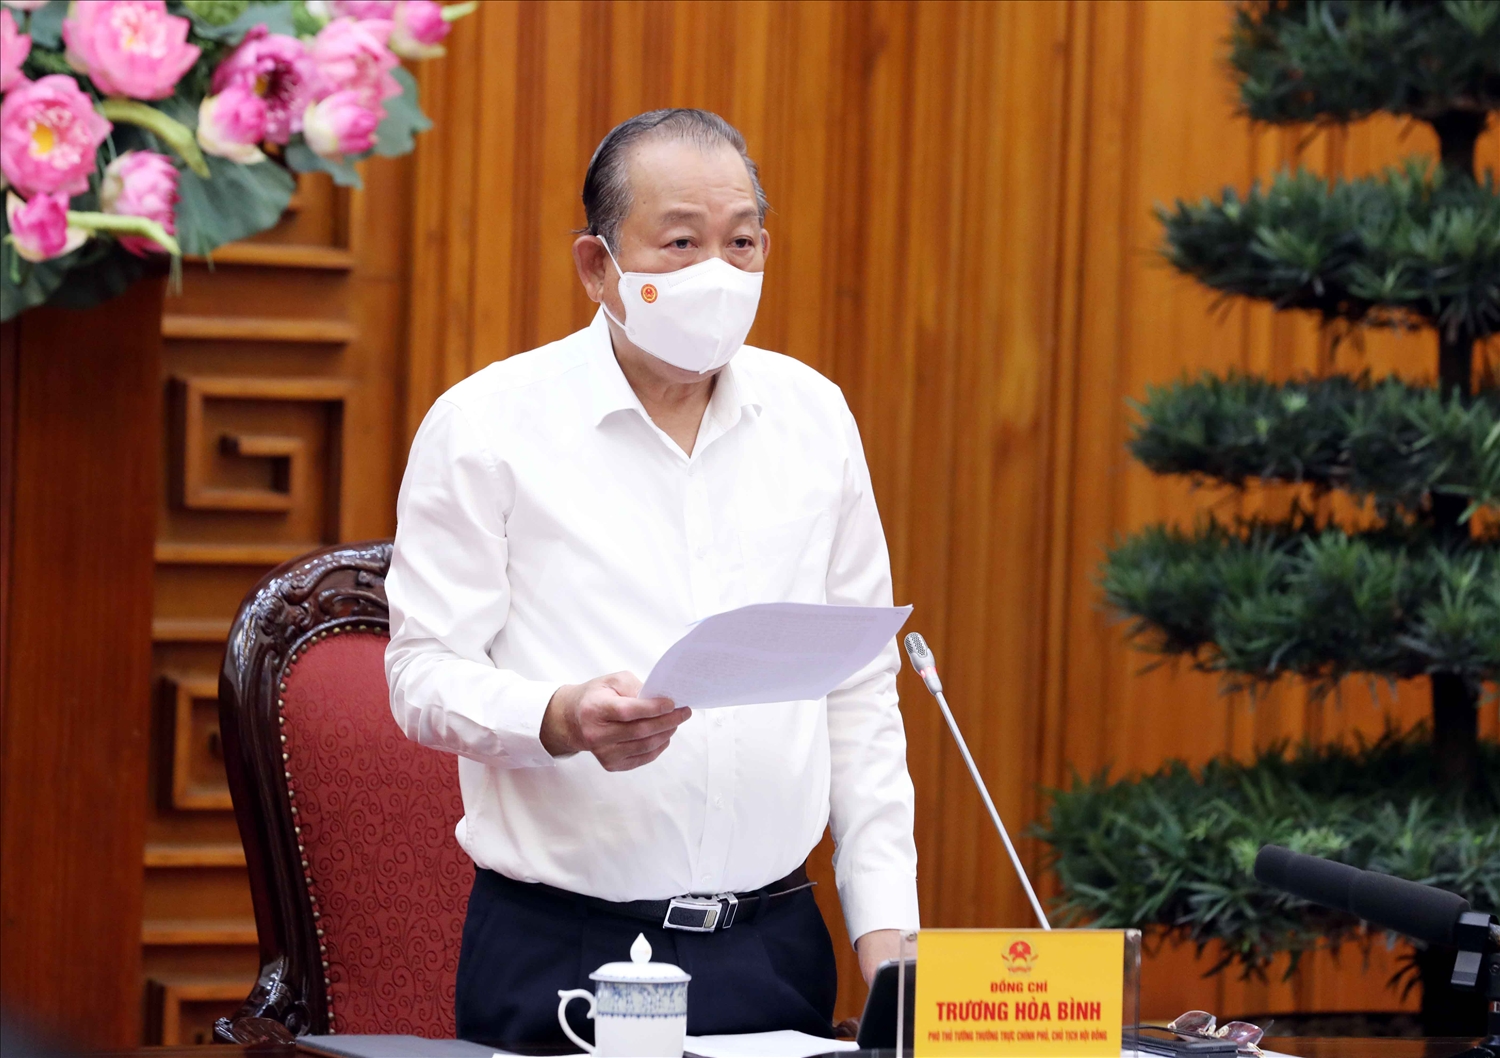 Phó Thủ tướng Thường trực phát biểu chỉ đạo tại cuộc họp Hội đồng Tư vấn đặc xá. Ảnh: VGP/Lê Sơn